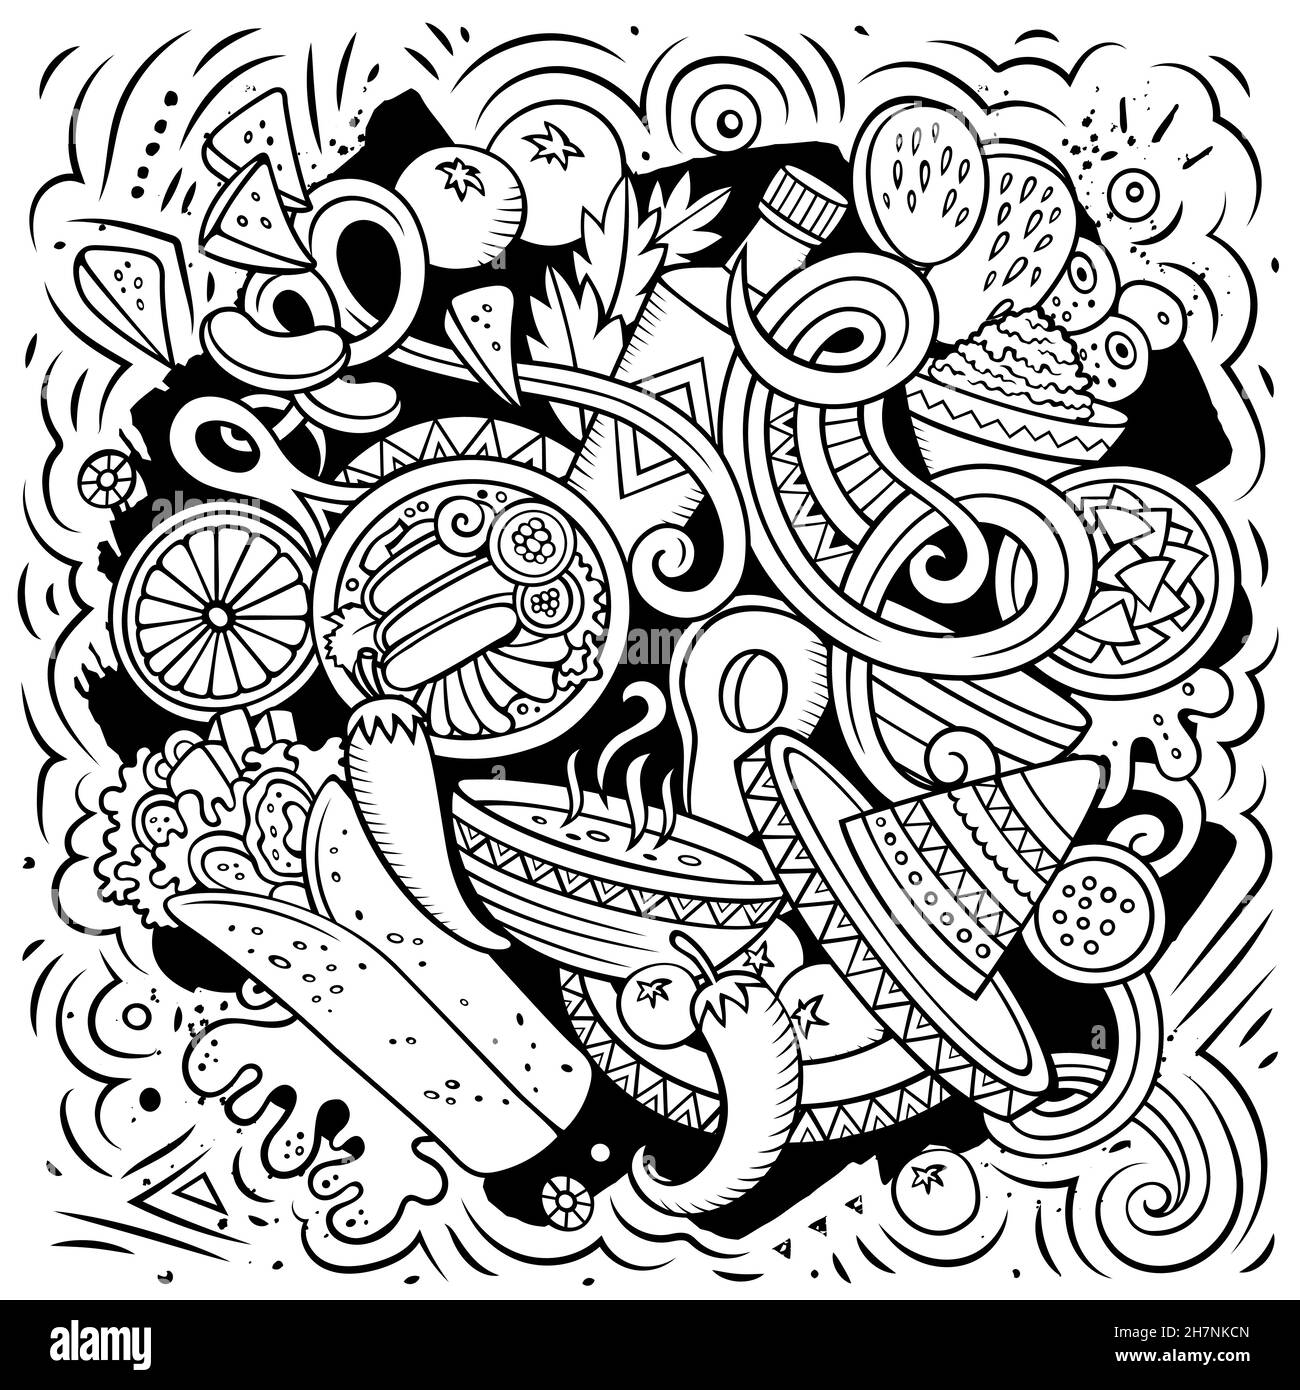 Mexikanische Lebensmittel handgezeichnete Vektor-Doodles Illustration. Kuche-Poster. Mexica Menü Elemente und Objekte Cartoon Hintergrund. Alle Elemente sind getrennt Stock Vektor